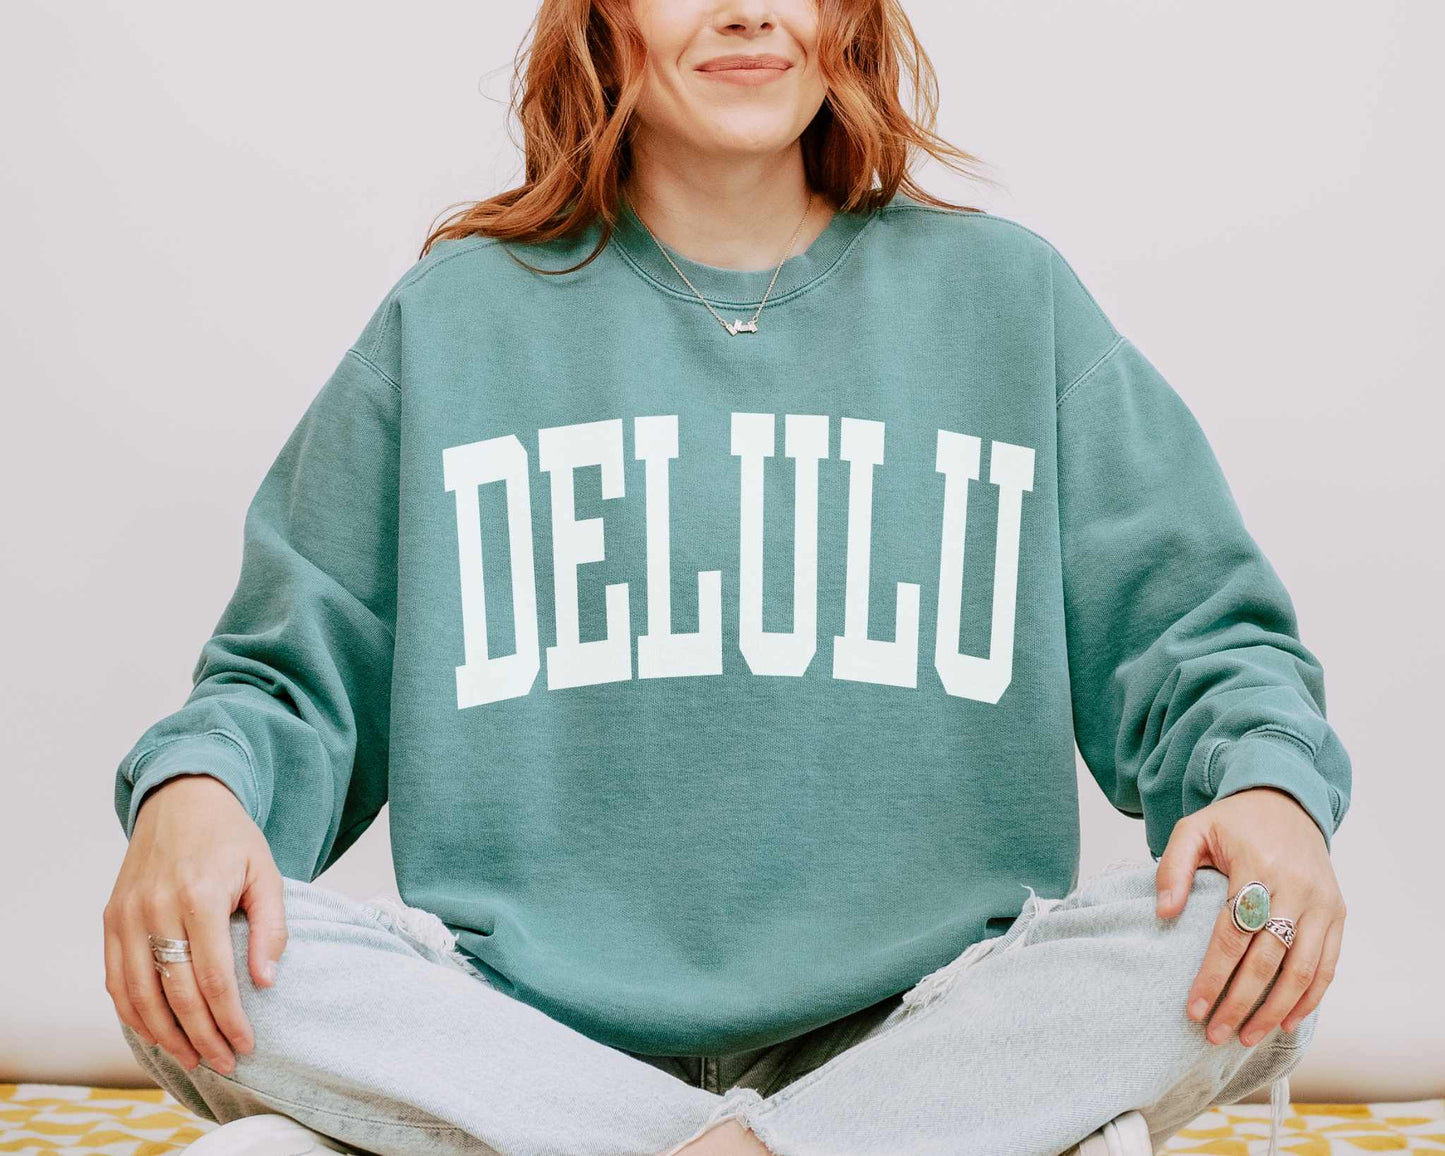 Delulu Delusional Preppy Comfort Colors Sweatshirt in Light Green.